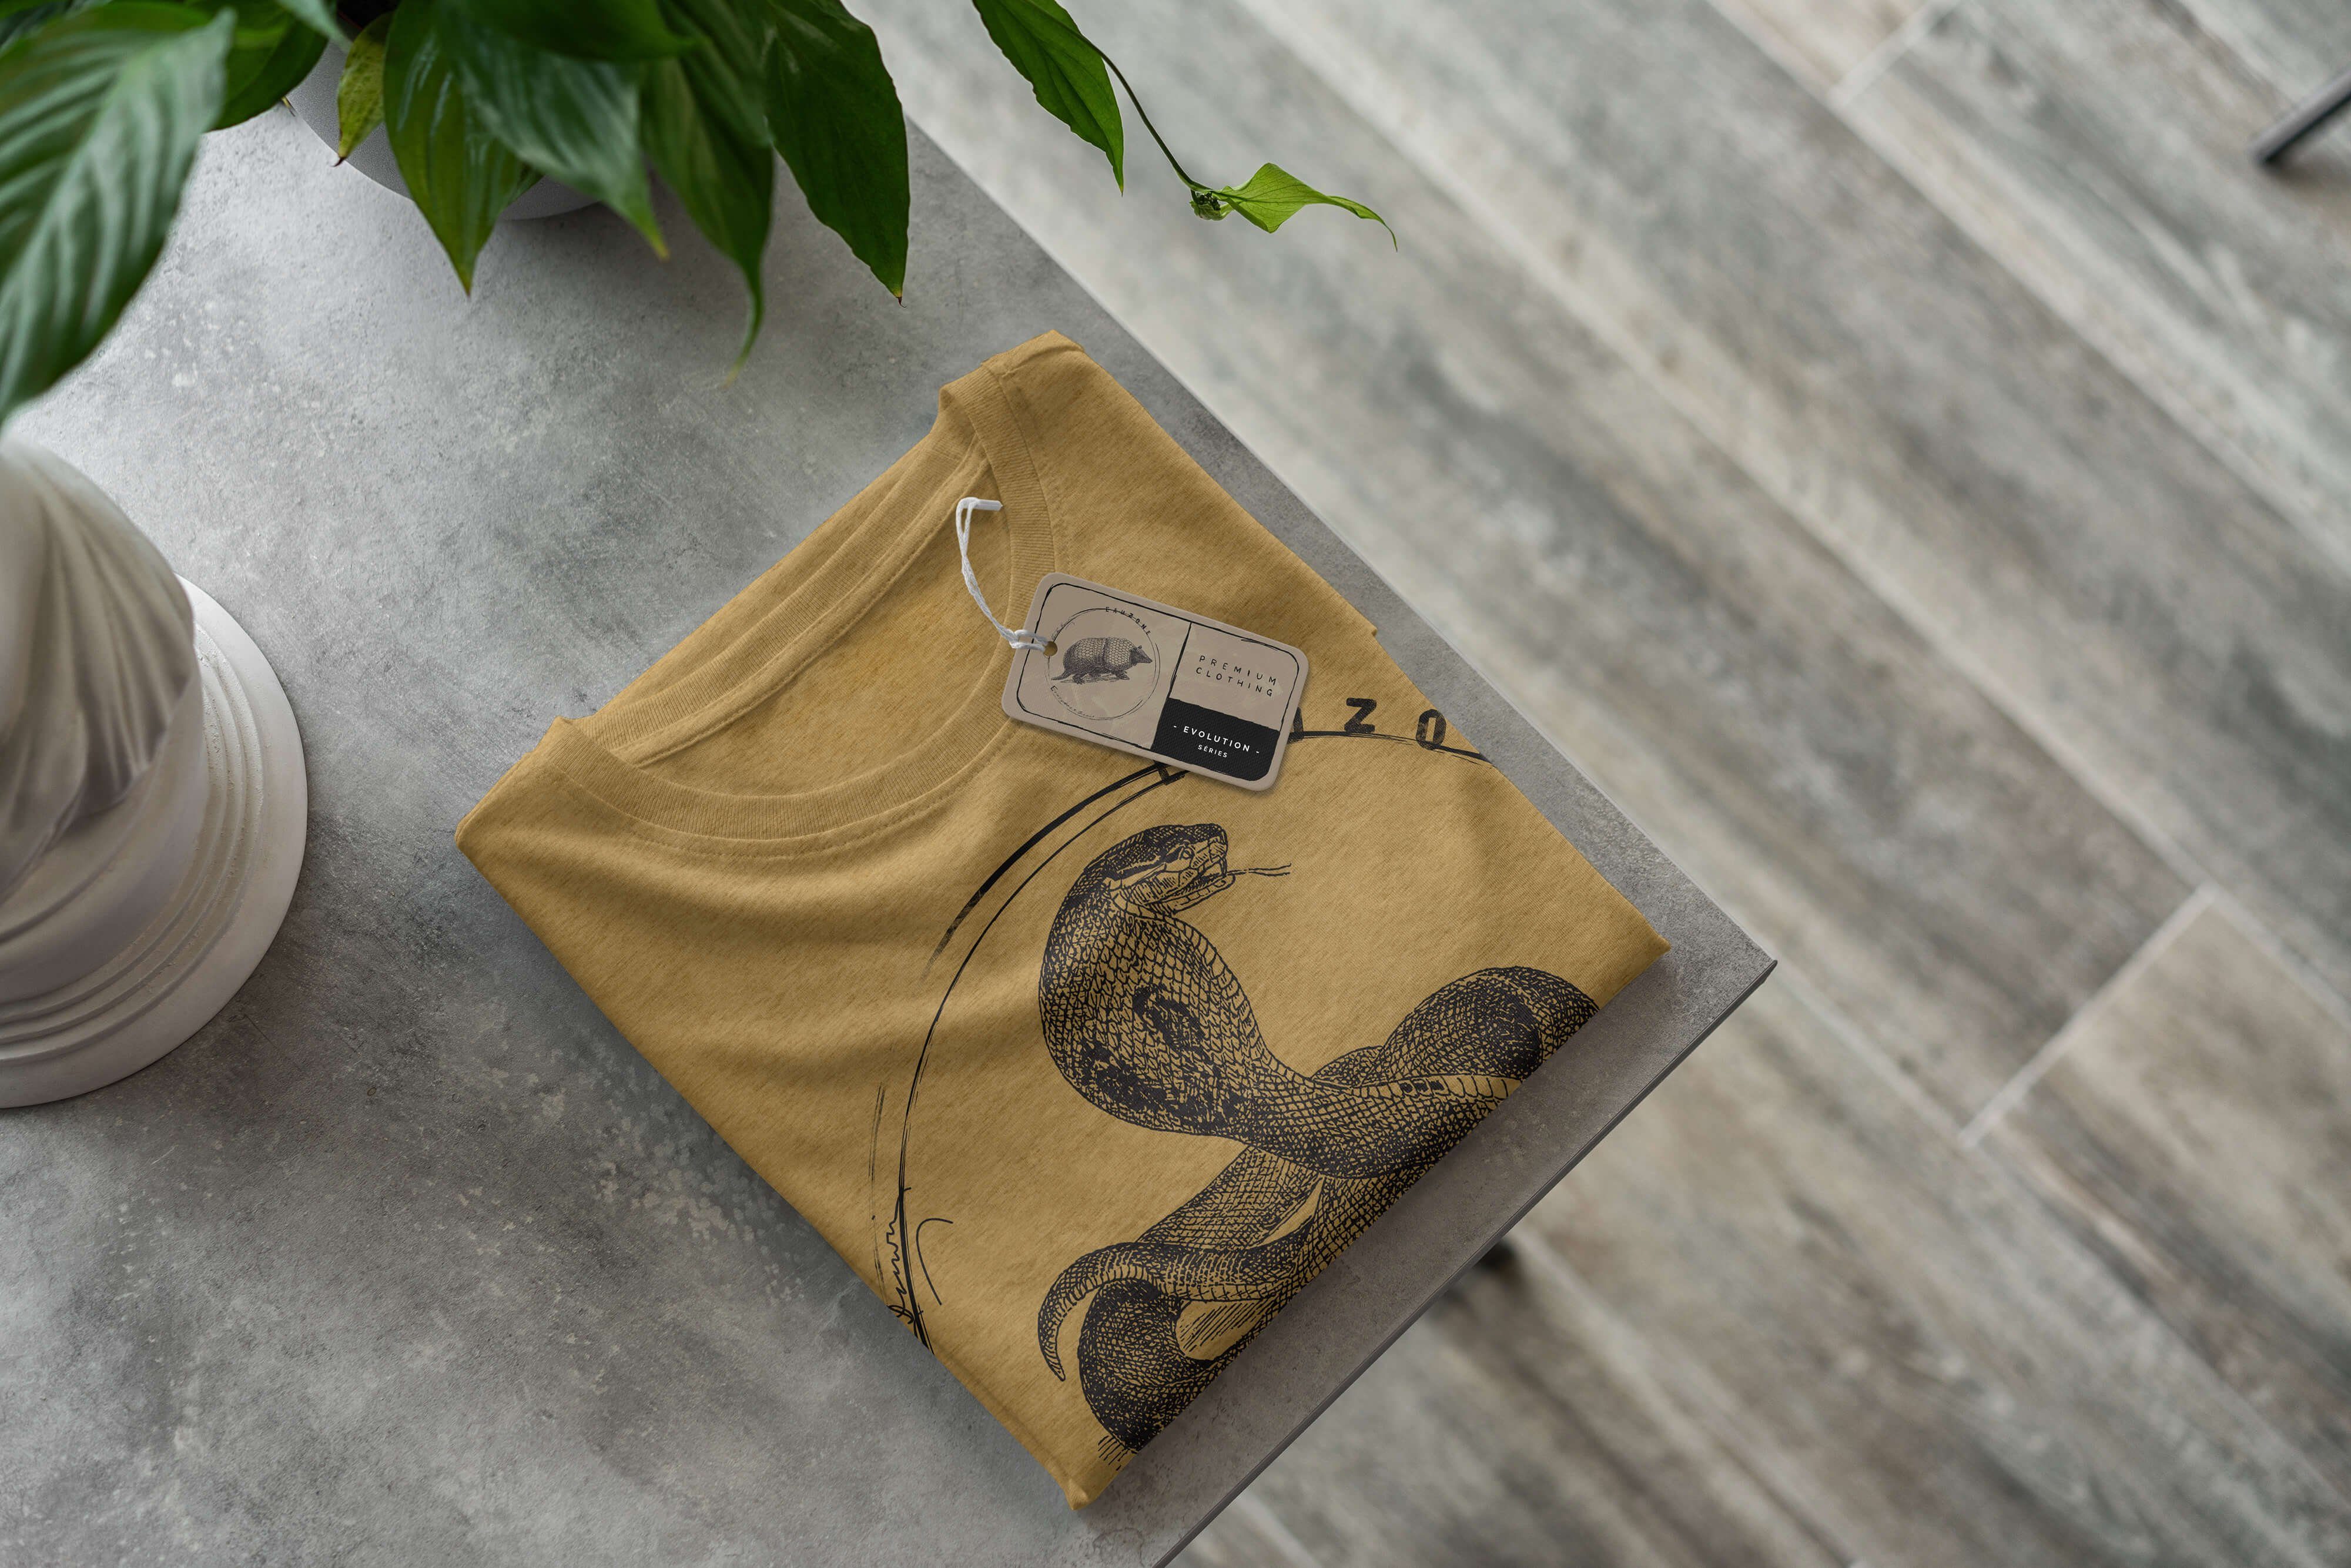 Sinus Art T-Shirt T-Shirt Herren Antique Gold Kobra Evolution